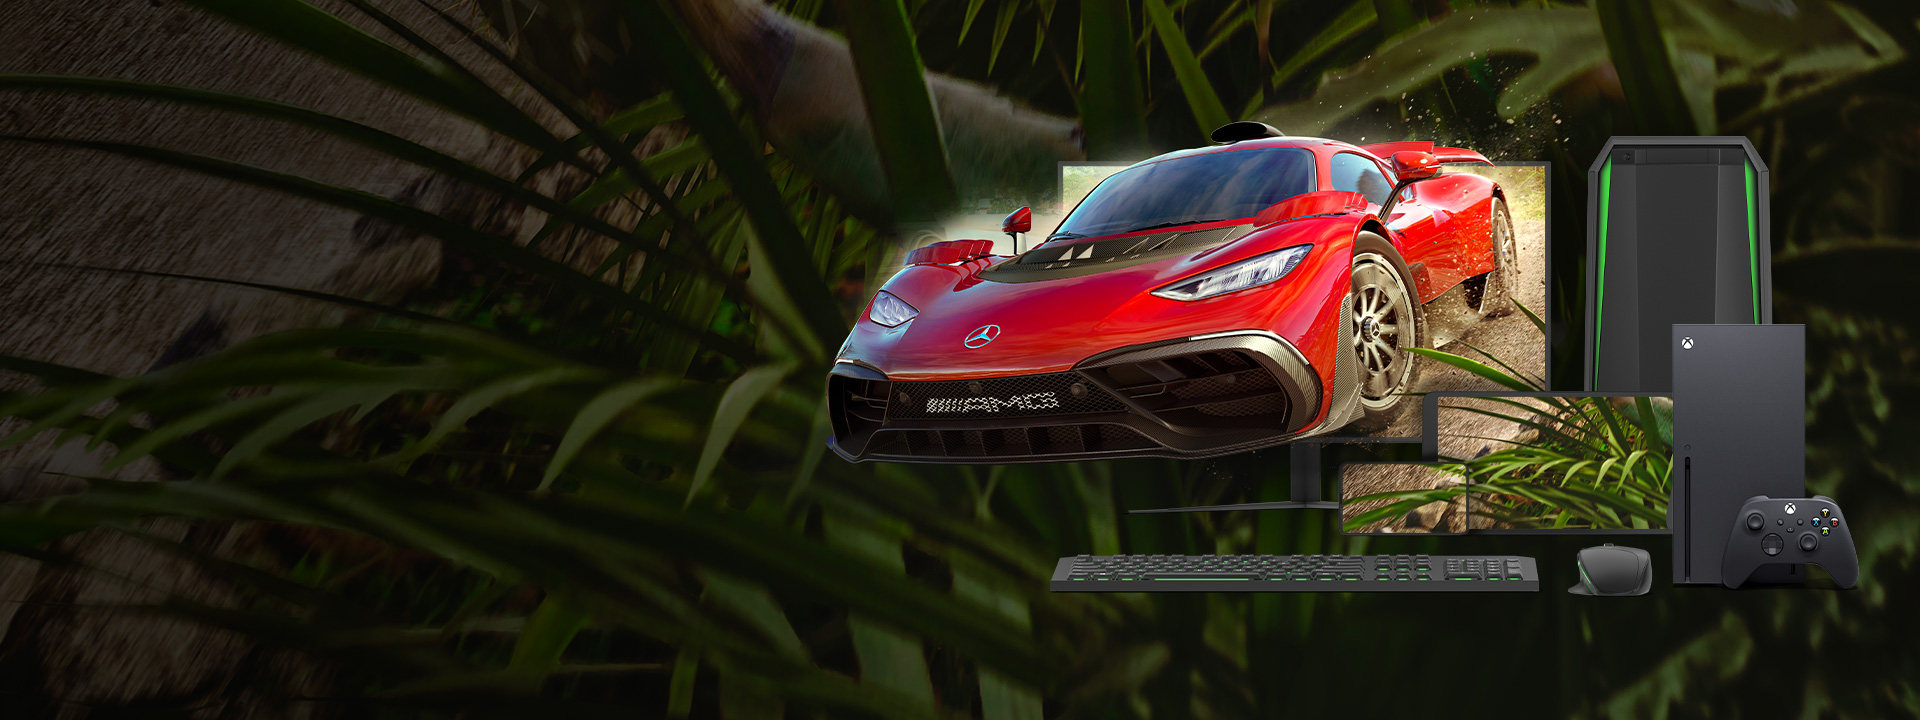 Flere smartenheter viser Forza Horizon 5-spillillustrasjoner over skjermene.